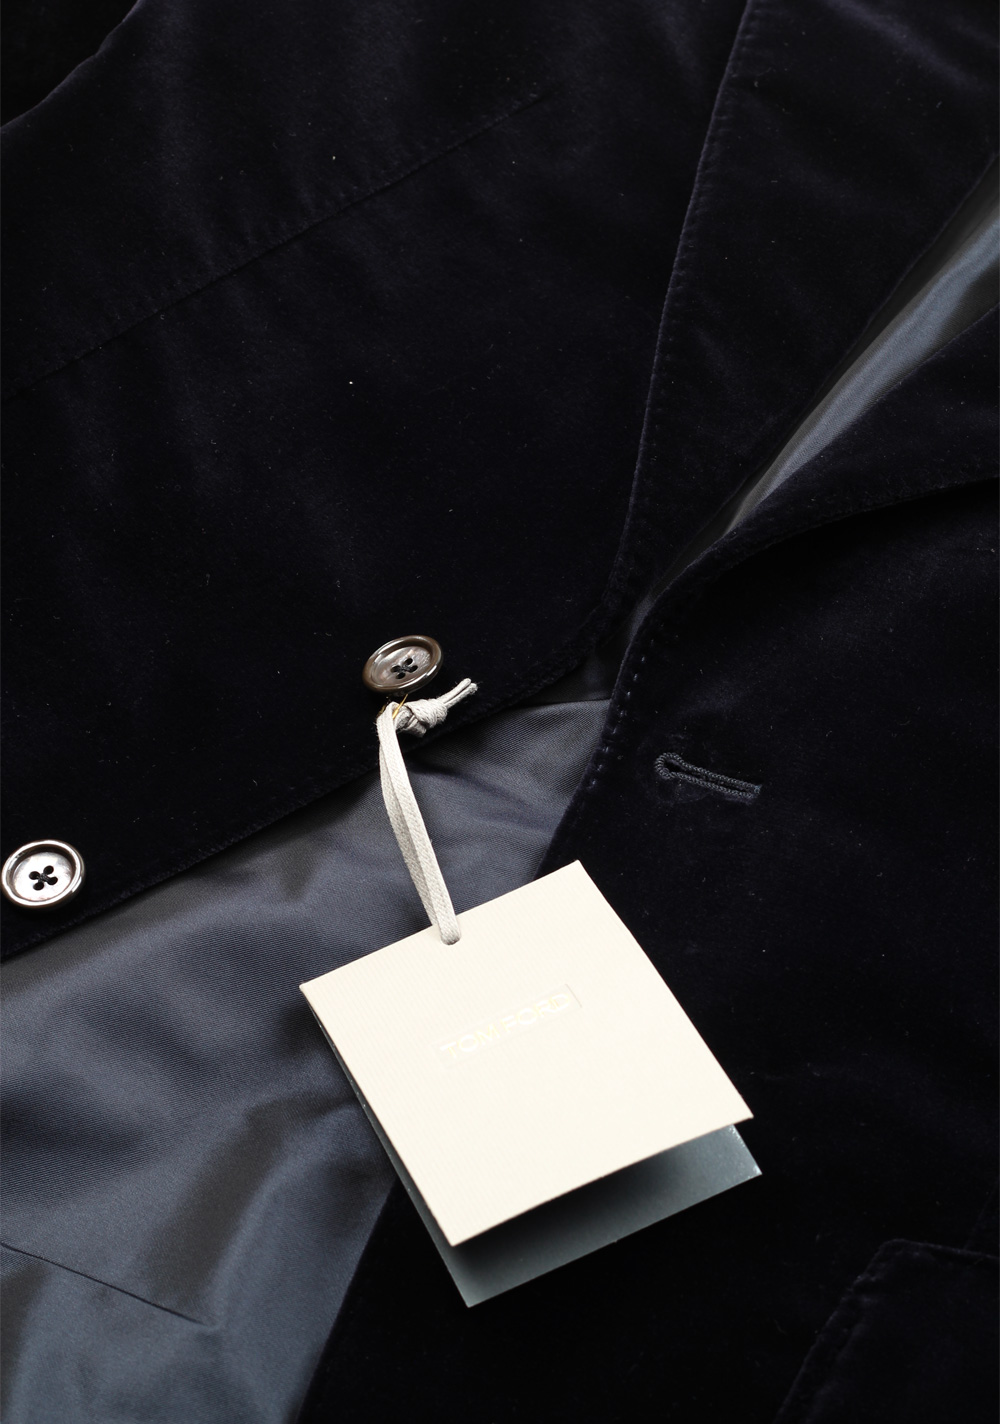 TOM FORD Shelton Black Velvet Sport Coat Tuxedo Dinner Jacket Size 48 / 38R U.S. | Costume Limité